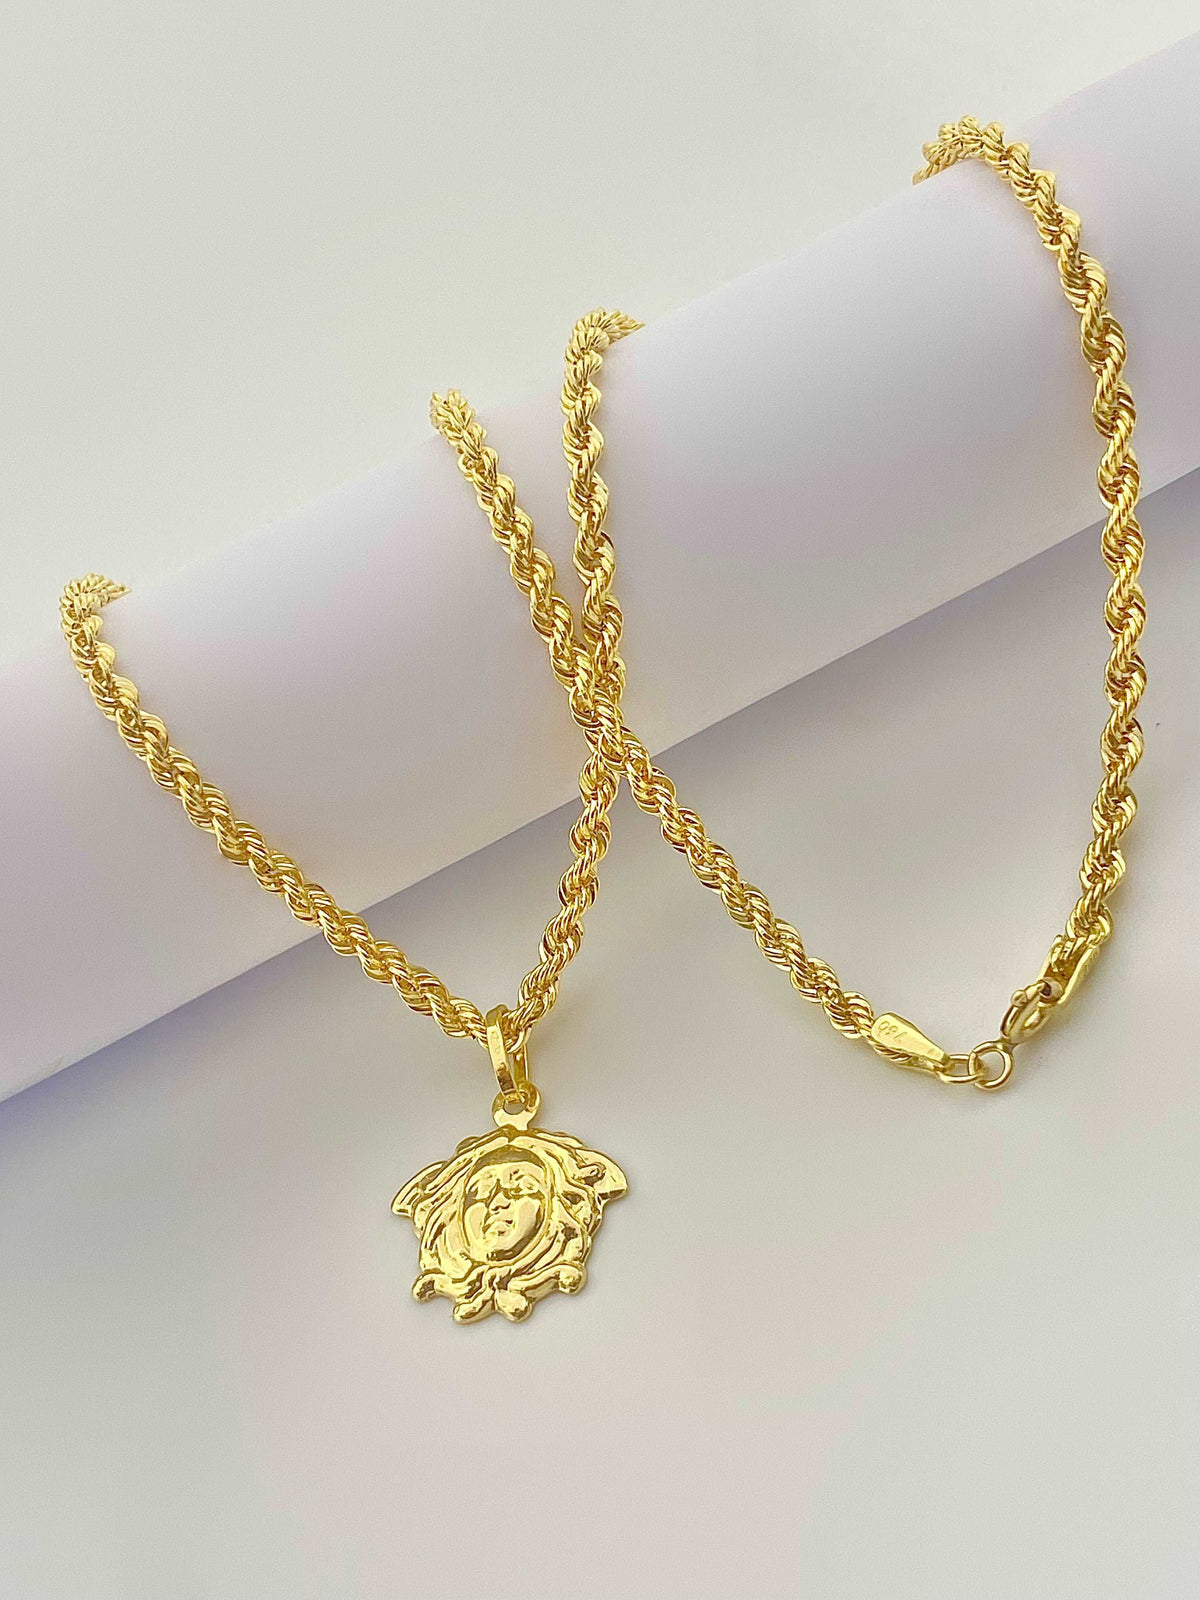 18k gold Inspired Design Of Medusa Necklace - Embellish Gold